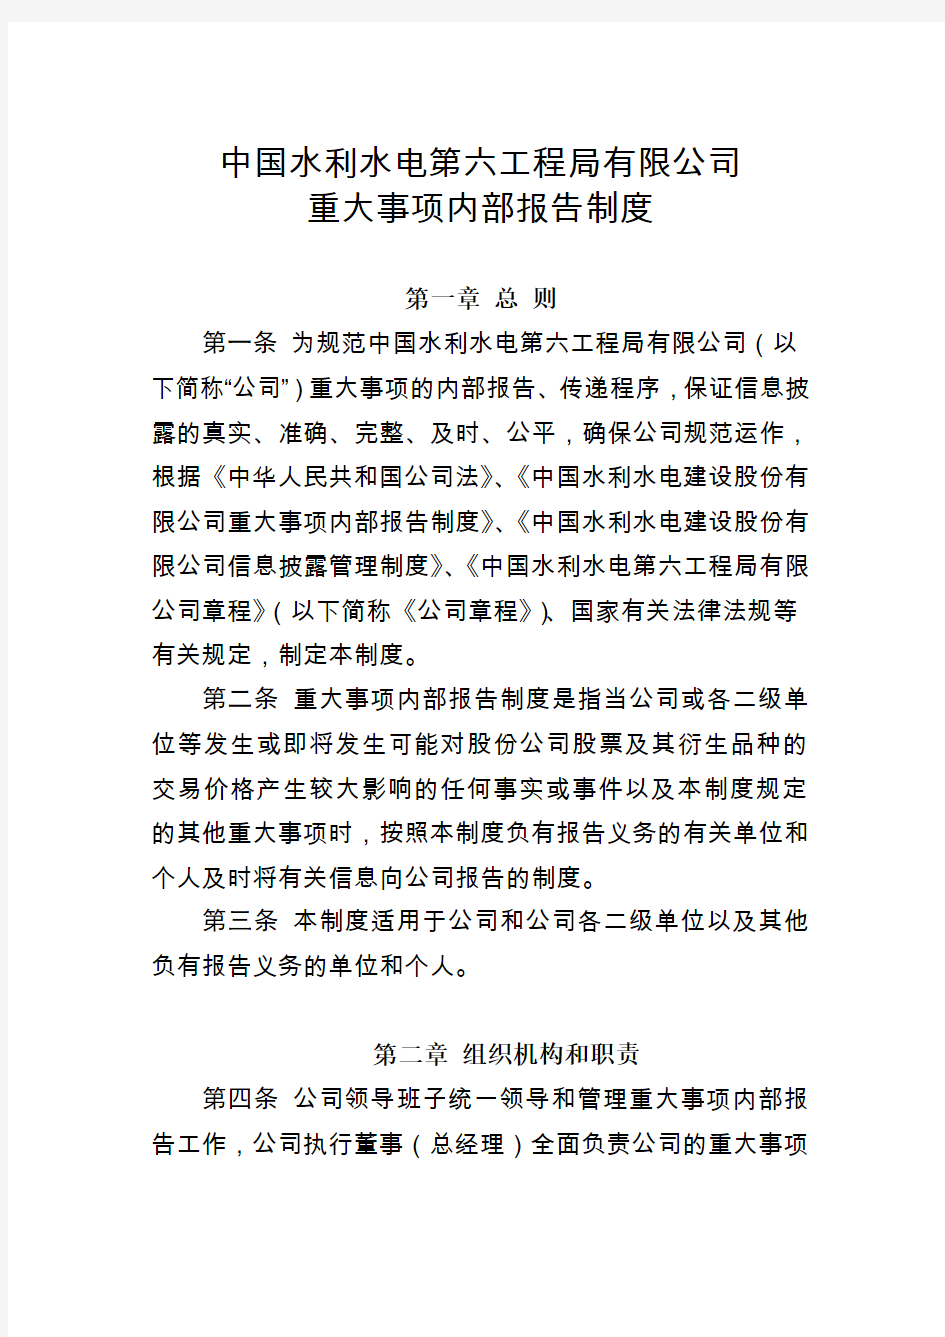 六局发〔2011〕313号中国水利水电第六工程局有限公司重大事项报告制度